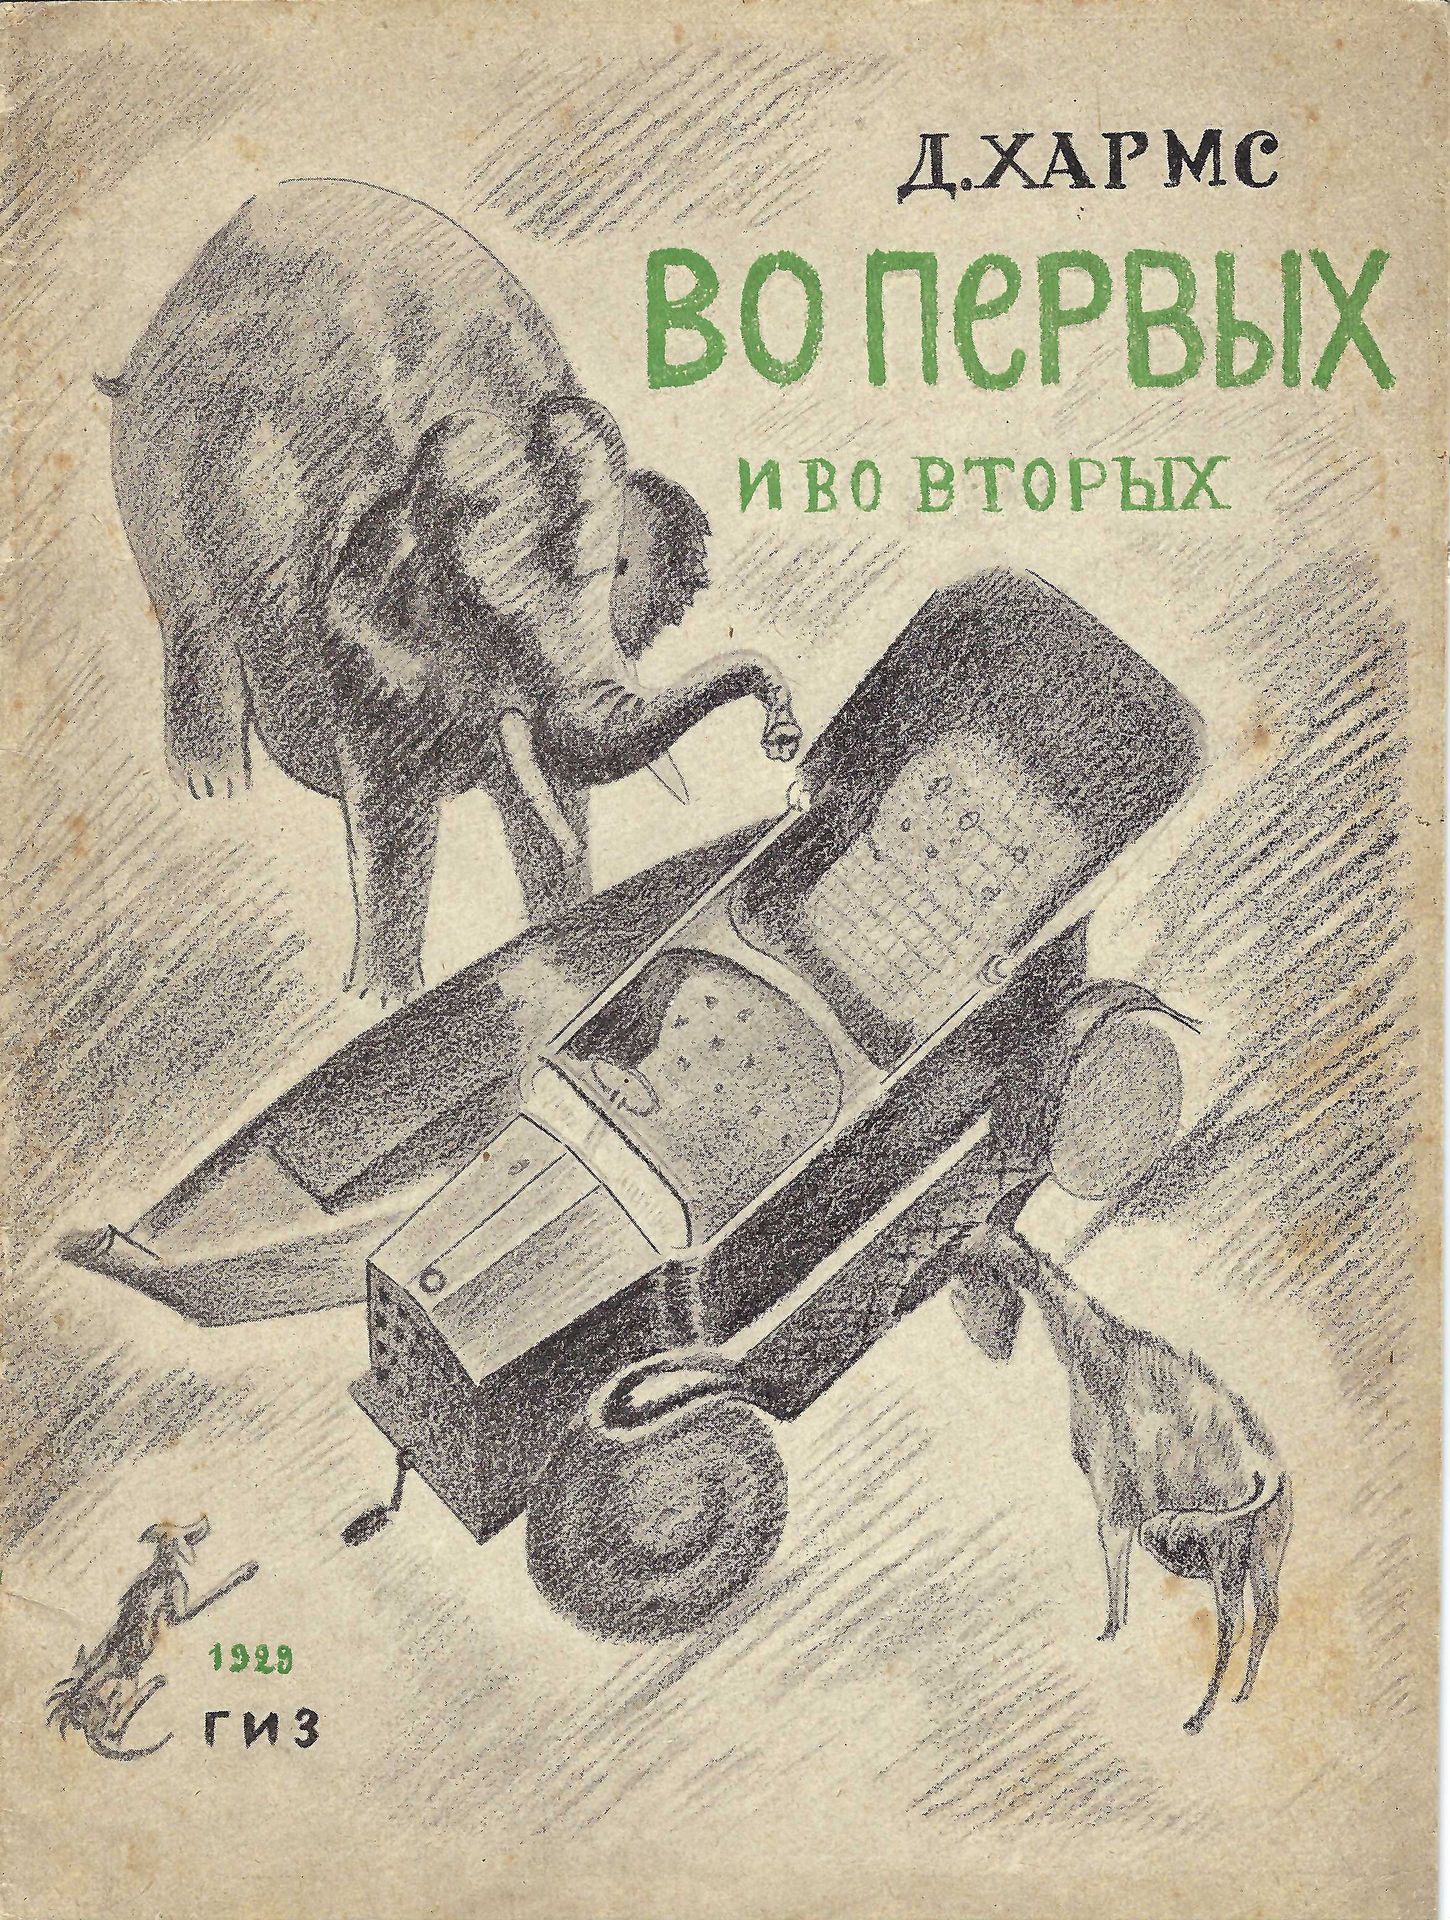 Null [字幕]
哈梅斯-达尼尔（1905-1942 年）
第一部和第二部Vladimir Tatline 插图。国家出版社，莫斯科，1929 年。23 页，&hellip;